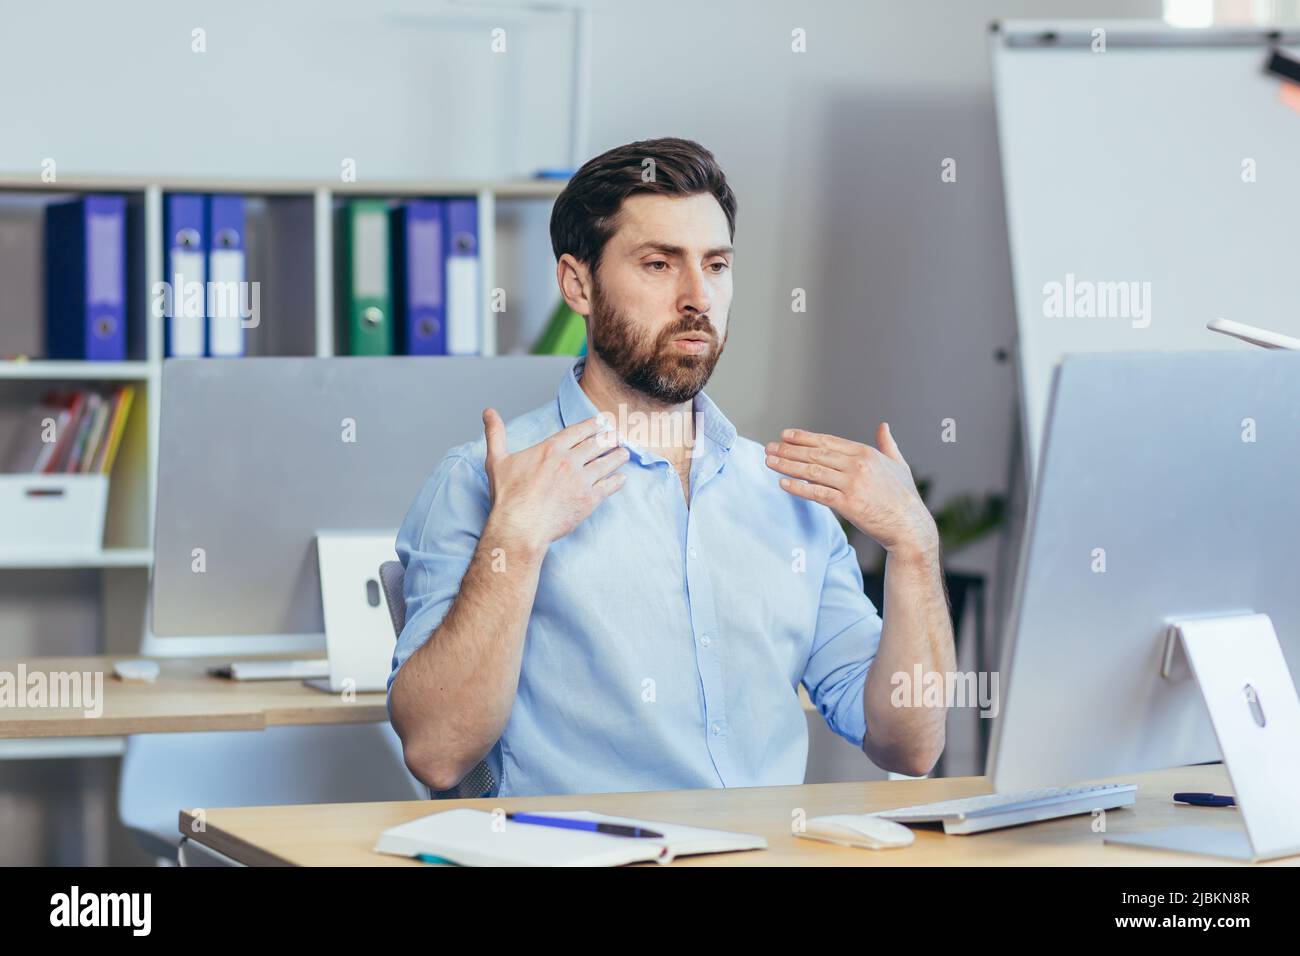 Caldo in ufficio, un uomo d'affari in una camicia che lavora in un luminoso ufficio moderno, agitando le braccia cercando di rinfrescarsi Foto Stock